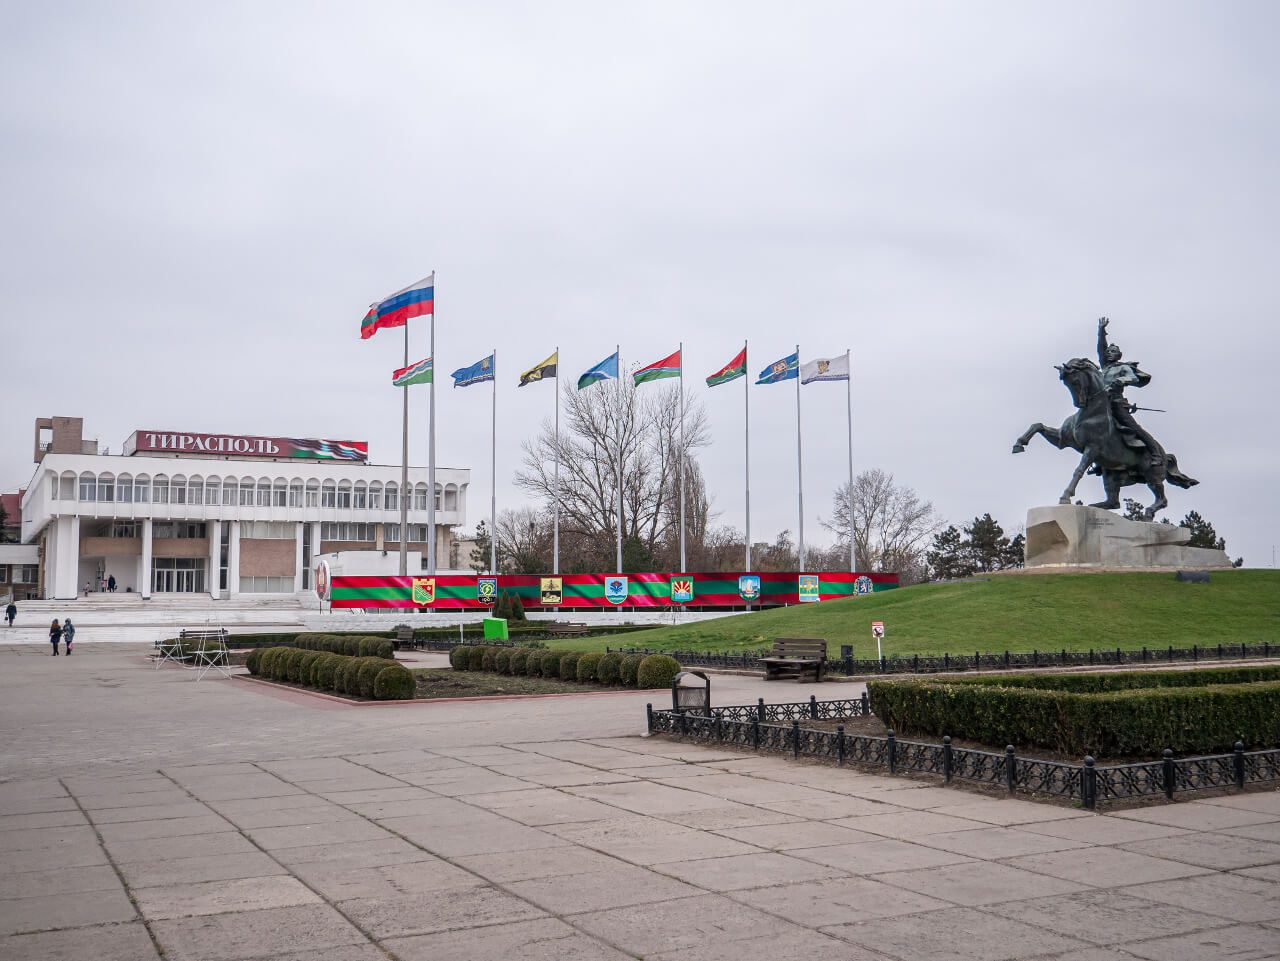 Pomnik Suworowa i flagi w Tyraspolu